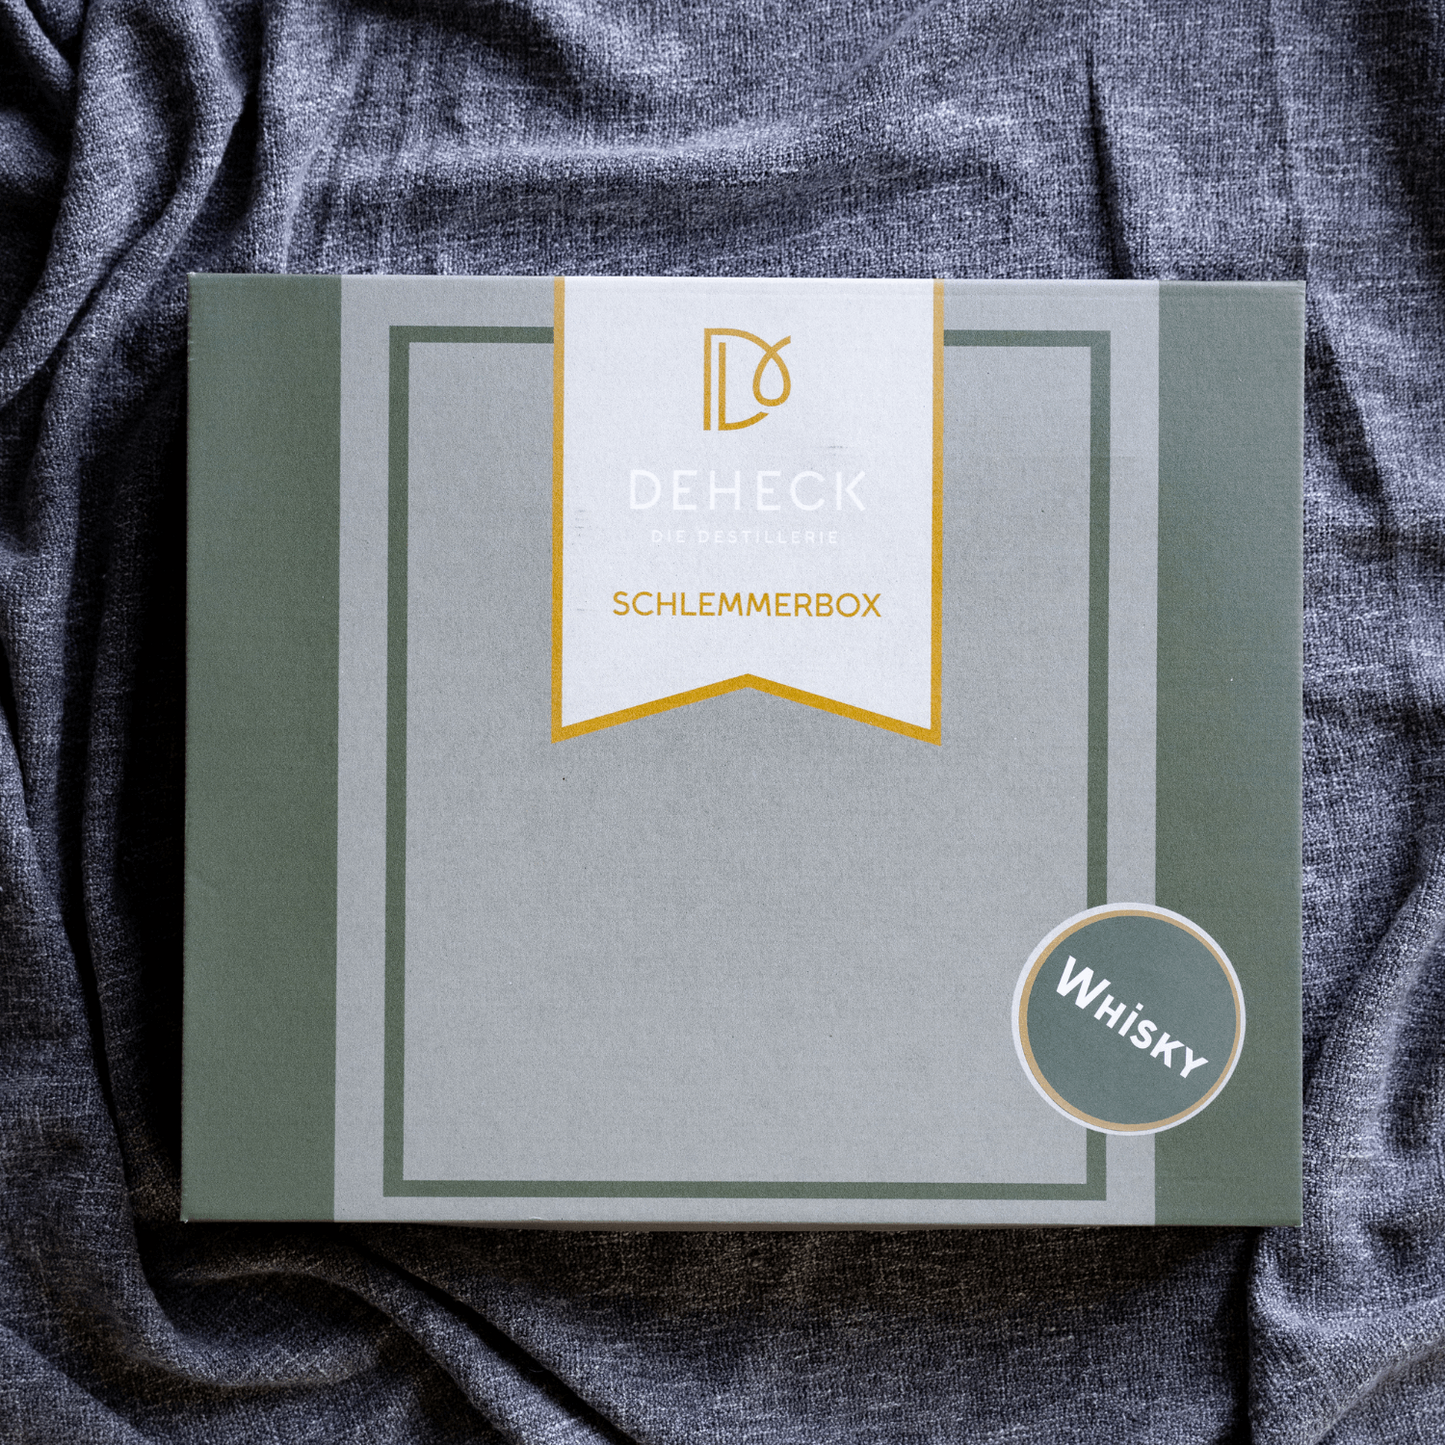 Deheck Schlemmerbox Whisky: Schöne Verpackung für das Whisky Set